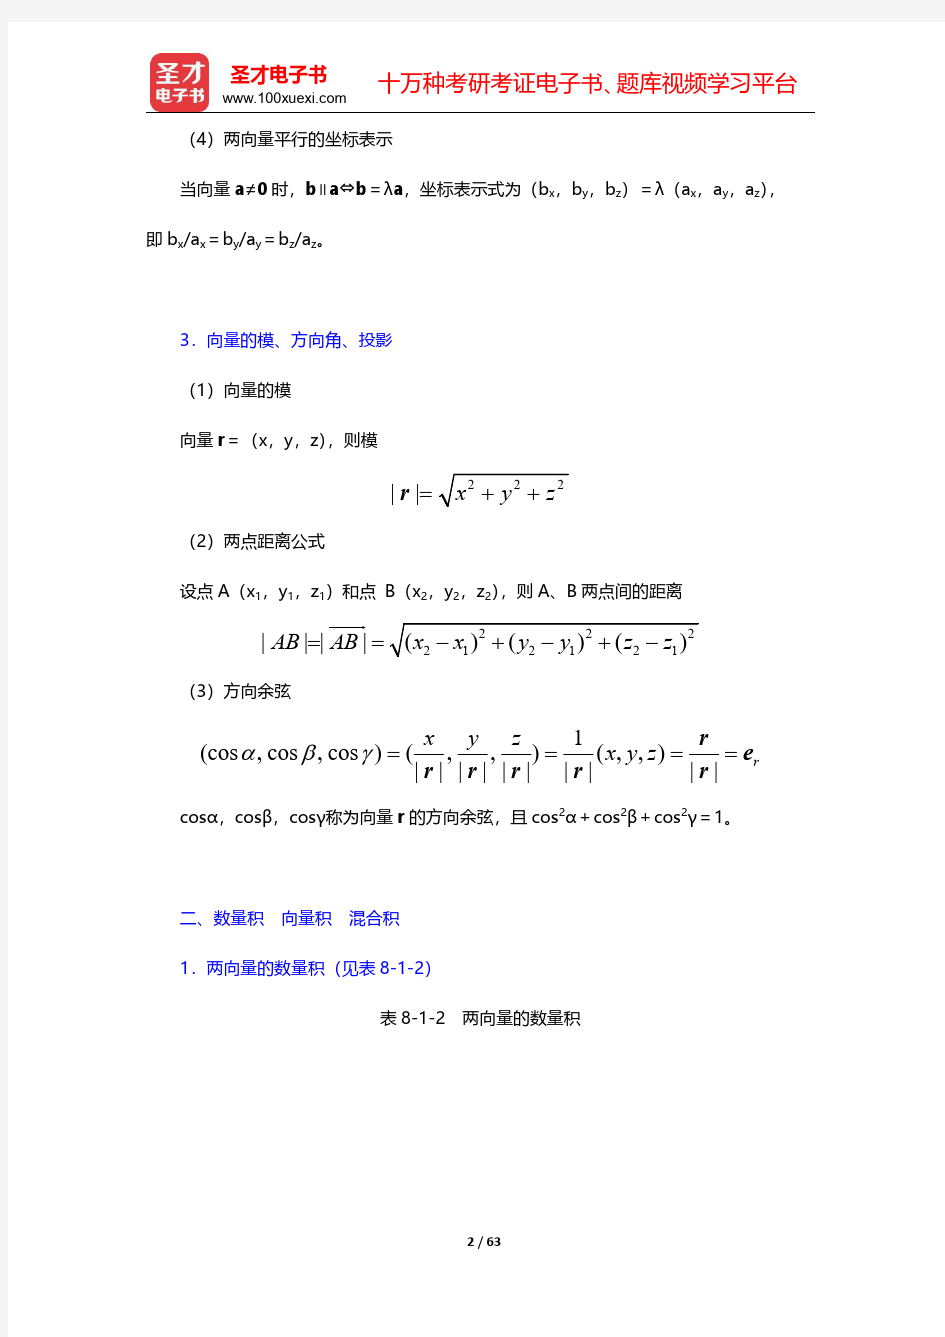 同济大学数学系《高等数学》第7版笔记和课后习题含考研真题详解(向量代数与空间解析几何)【圣才出品】